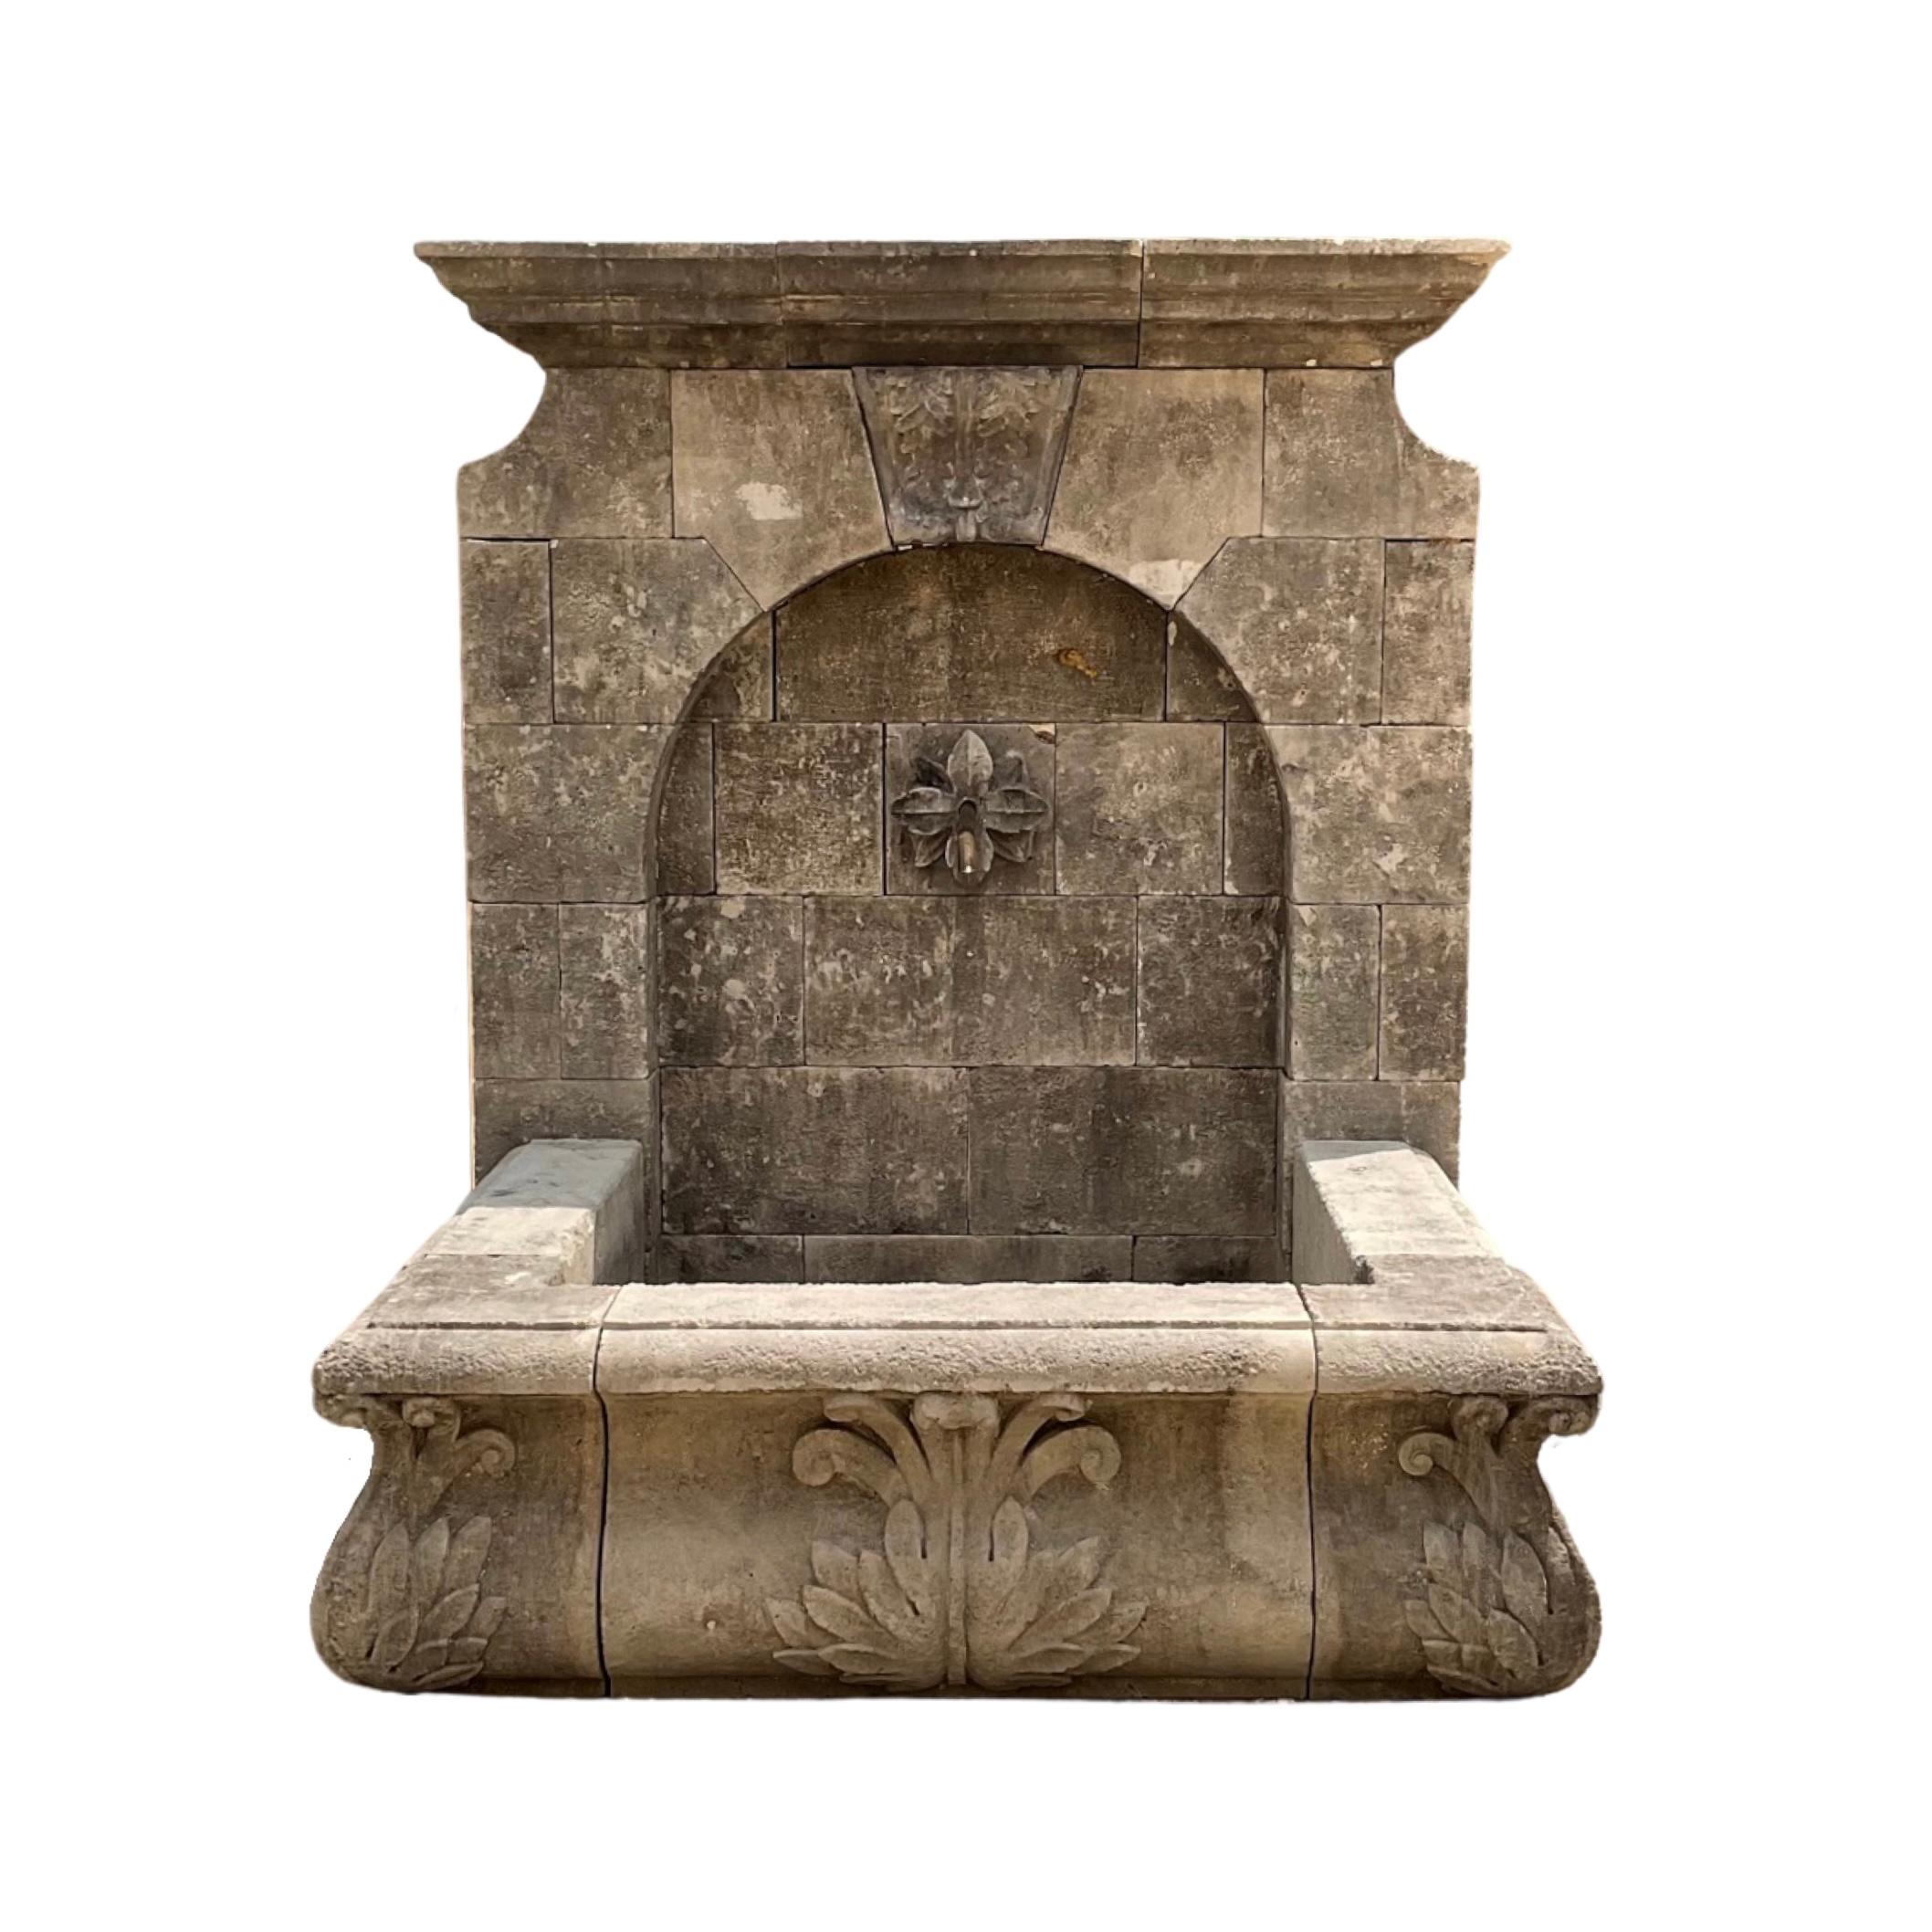 Dieser prächtige Wandbrunnen aus französischem Kalkstein ist eine perfekte Ergänzung für jeden Außenbereich. Der aus robustem Kalkstein handgefertigte Brunnen zeigt ein in den Brunnen und das untere Becken eingearbeitetes Blumen- und Blattmuster aus